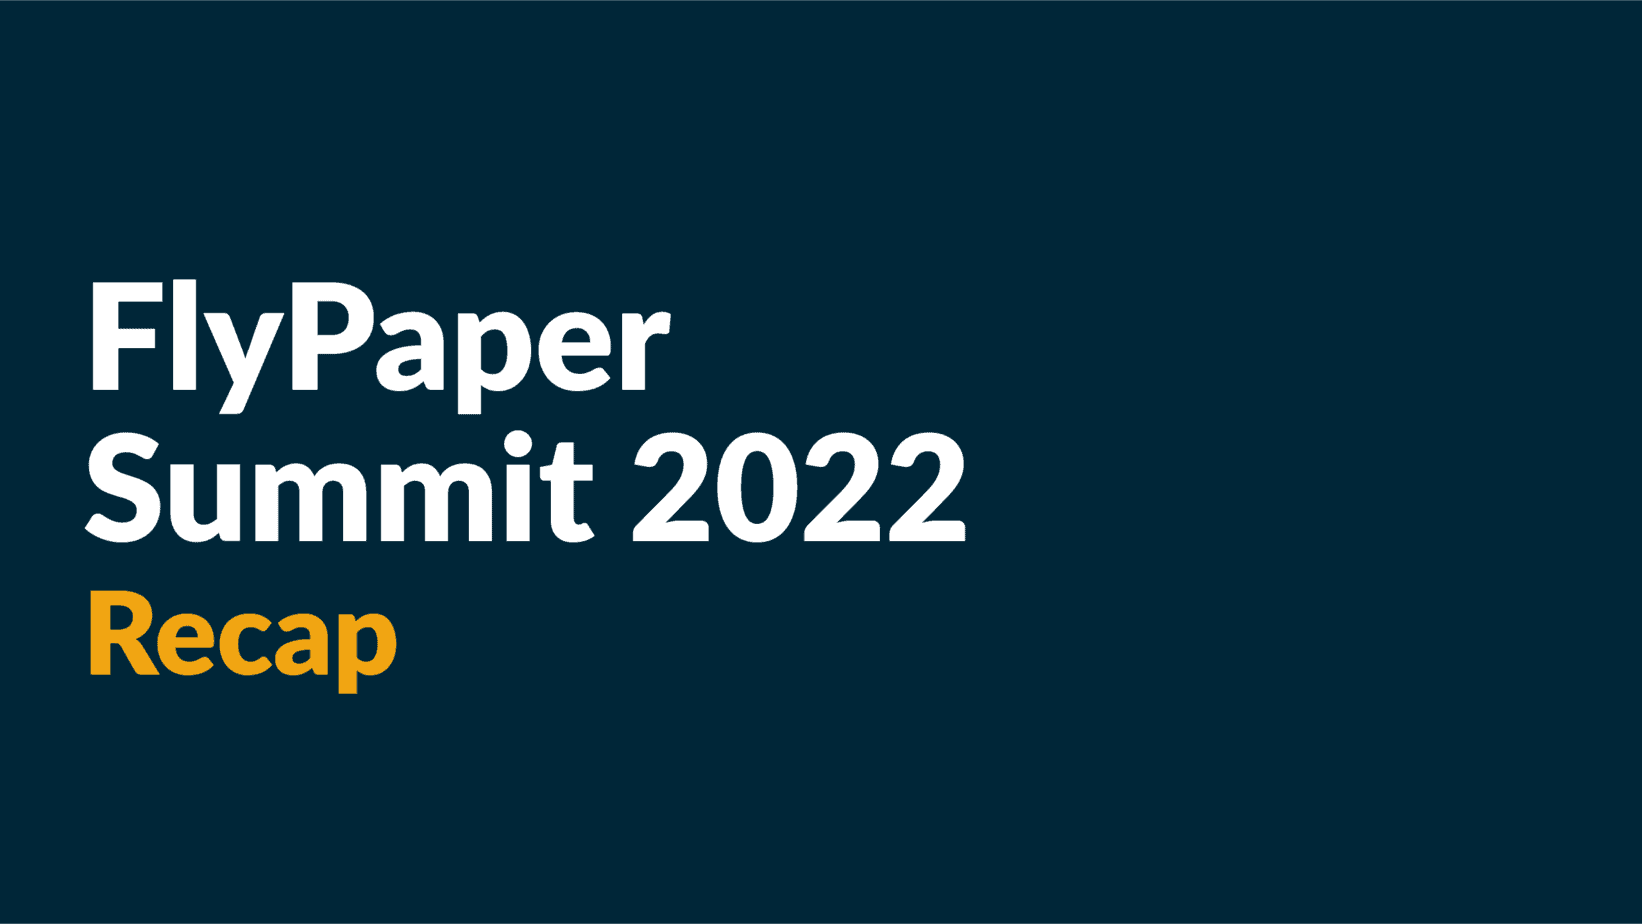 FlyPaper Summit 2022 Zusammenfassung in Miniaturansicht